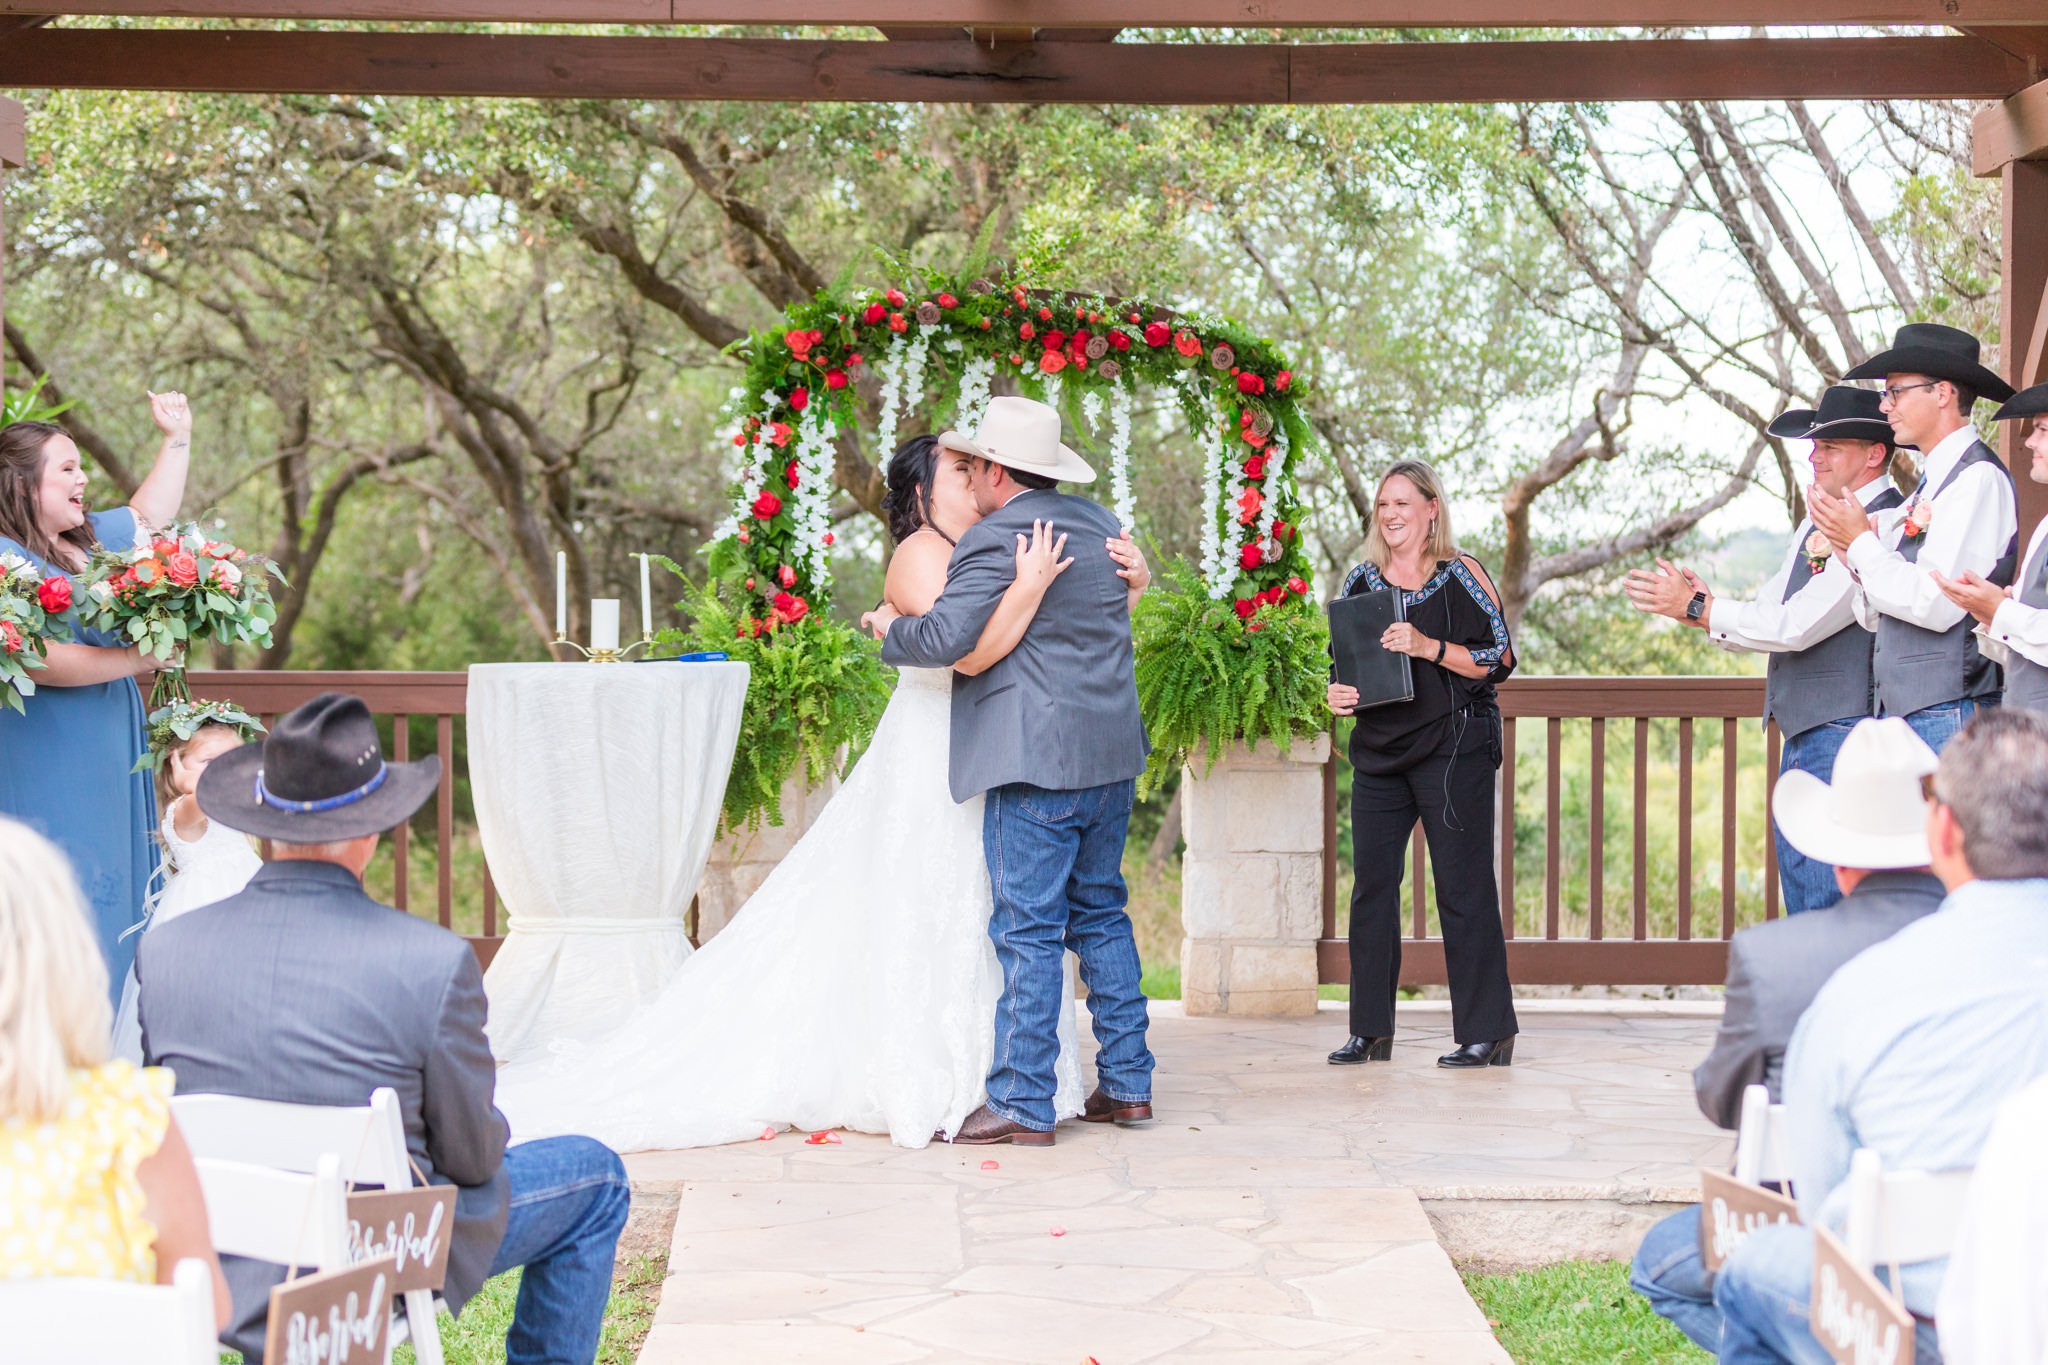 A Dusty Blue and Coral Wedding at the Milestone New Braunfels in New Braunfels, TX by Dawn Elizabeth Studios, New Braunfels Wedding Photographer